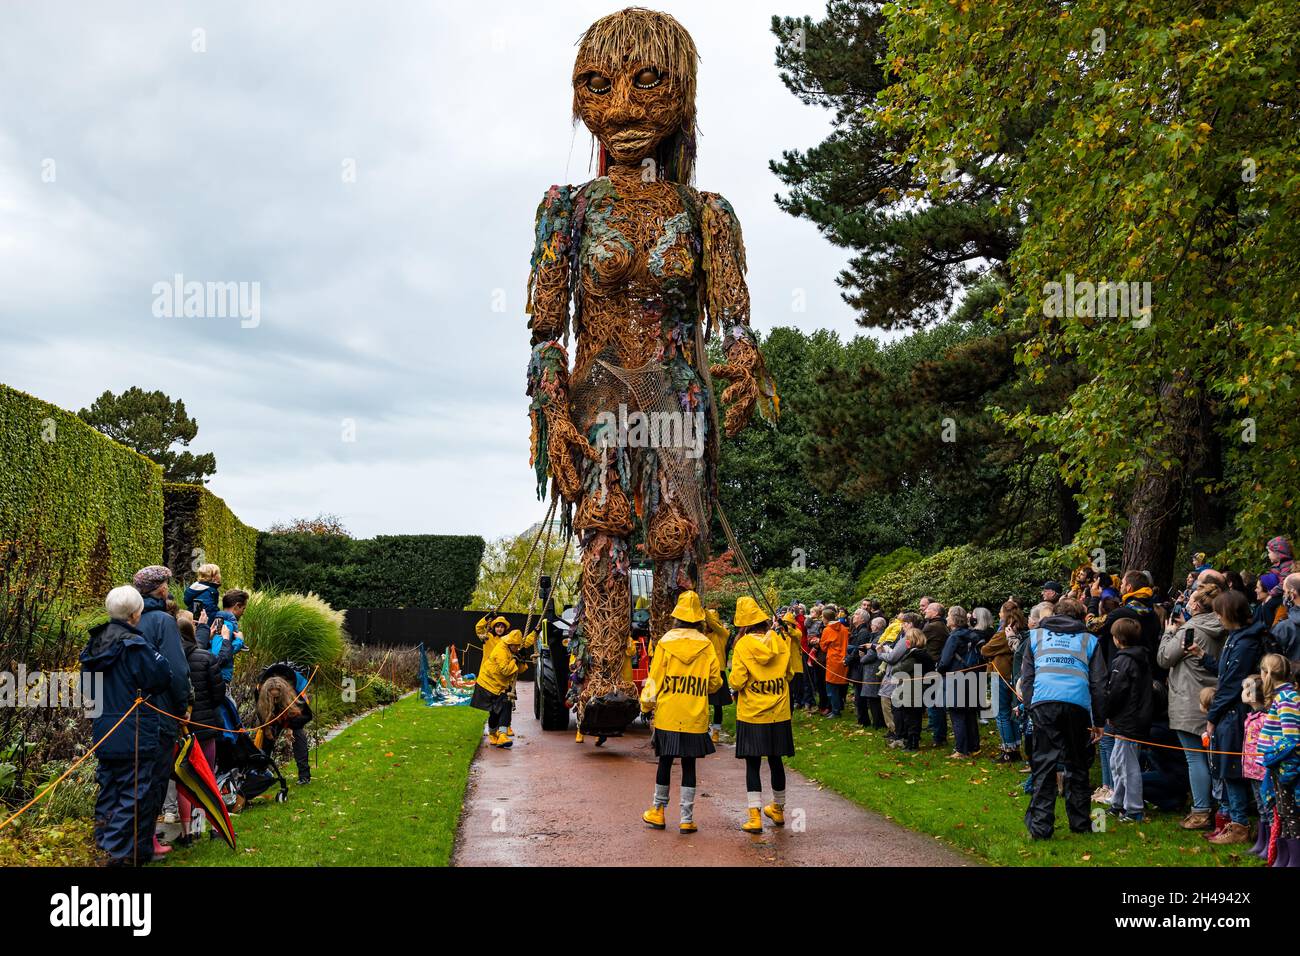 Des gens qui regardent l'événement théâtral Giant Puppet Storm, fait des matériaux recyclés de forme, au Royal Botanic Garden, Édimbourg, Écosse, Royaume-Uni Banque D'Images